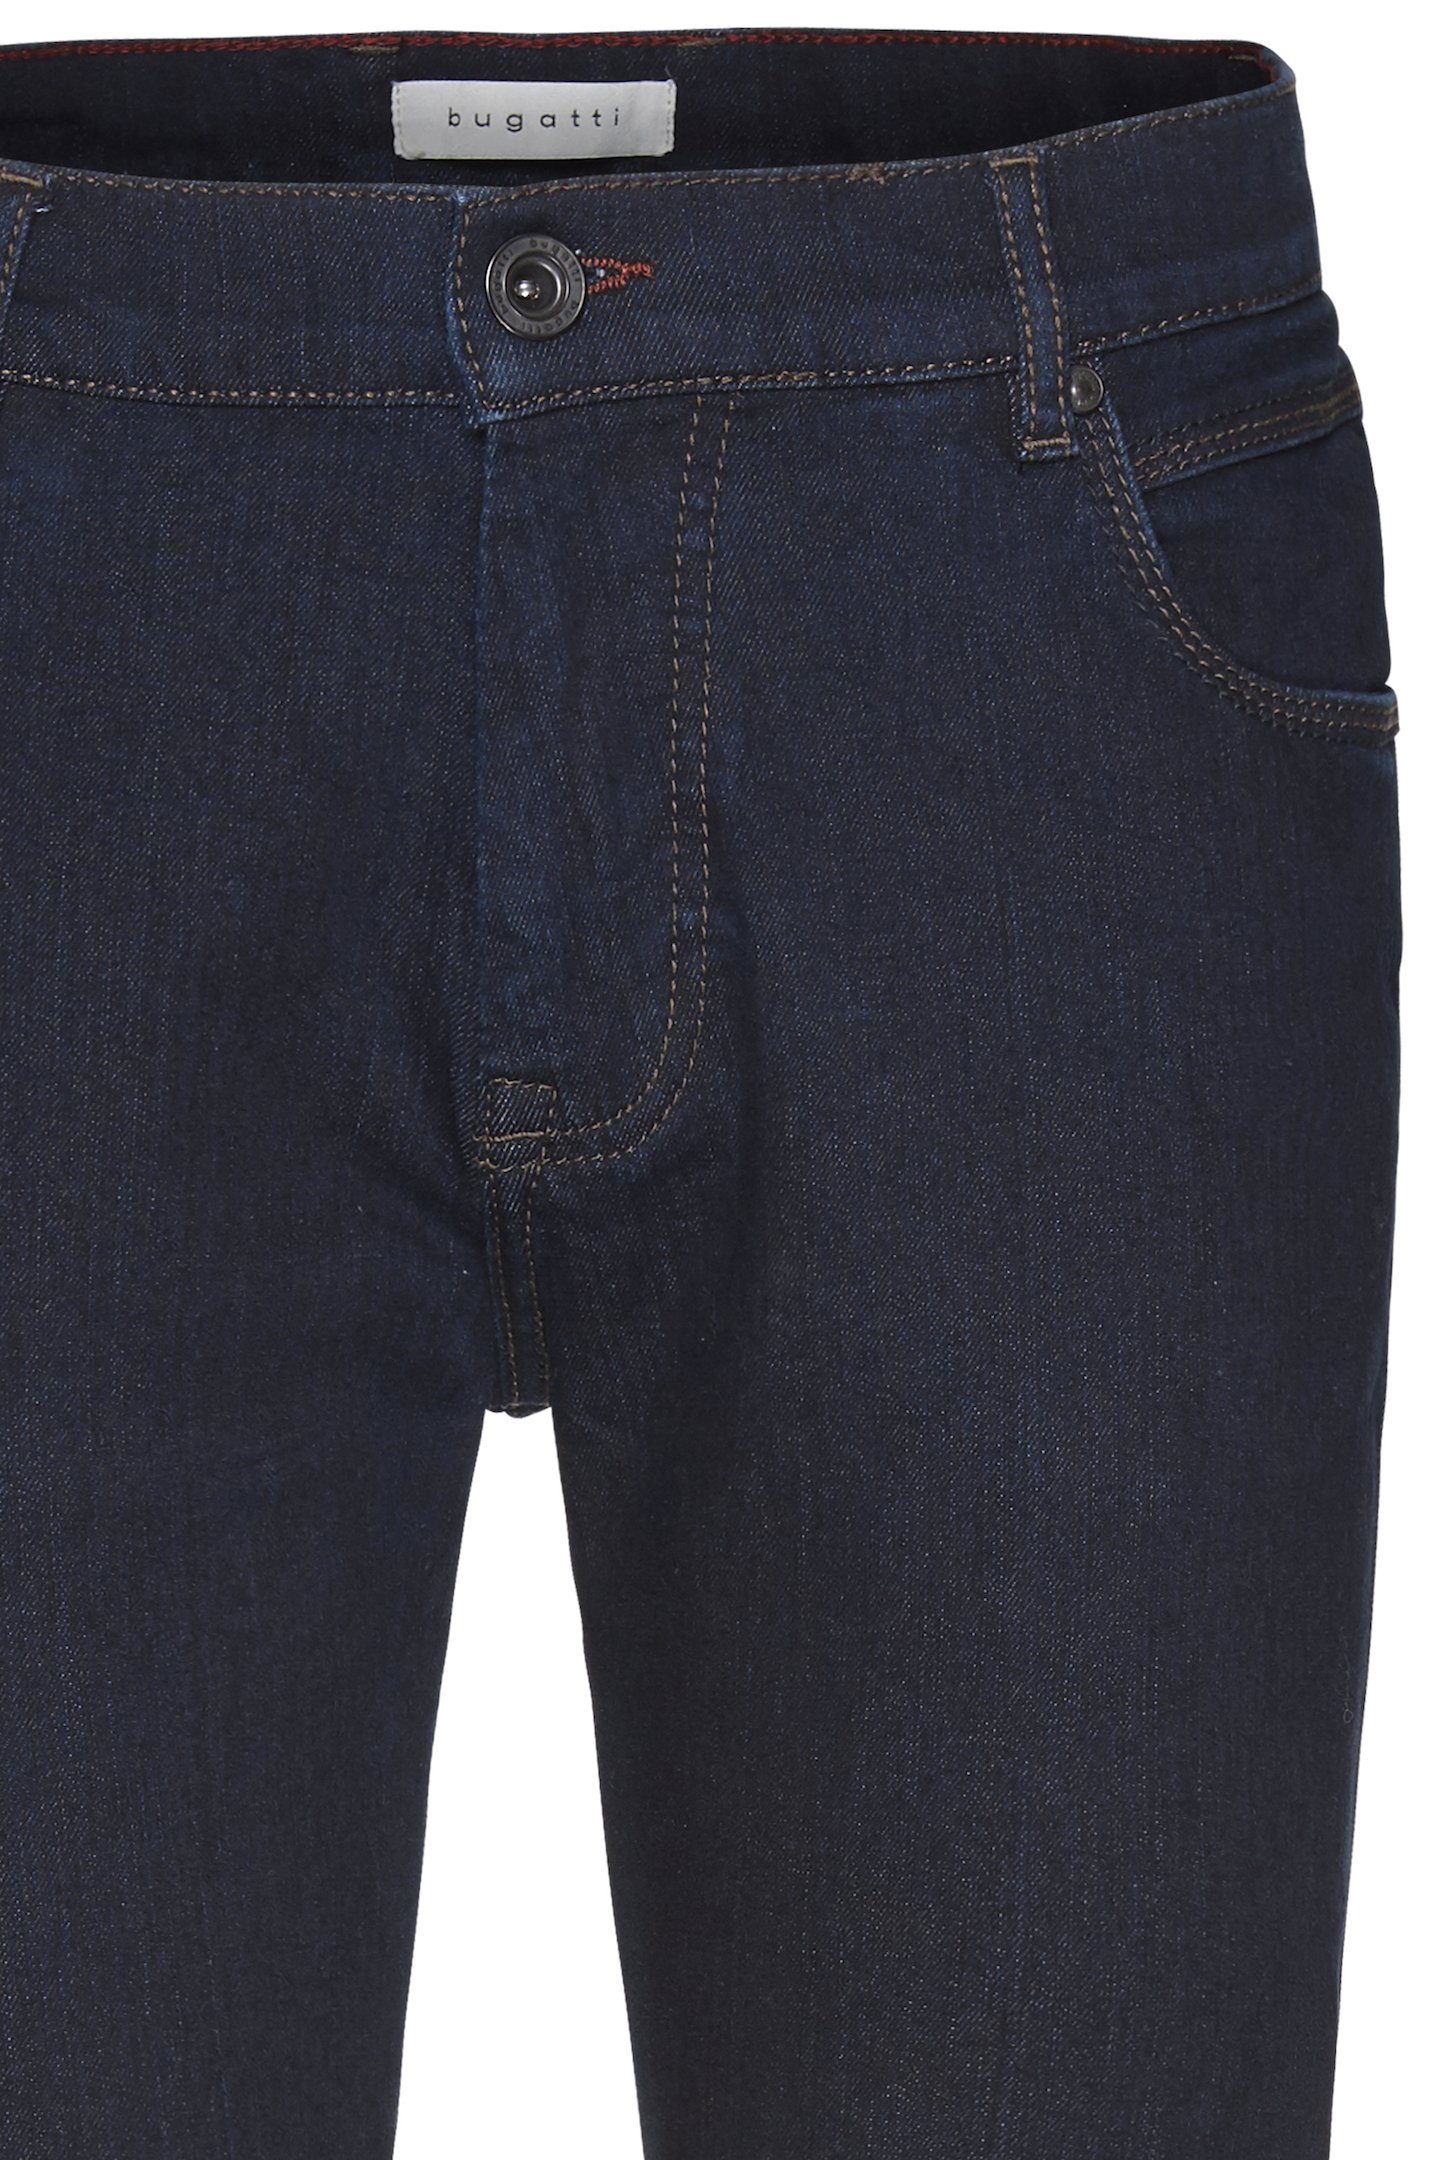 Power blau bugatti raw Stretch denim mit 5-Pocket-Jeans